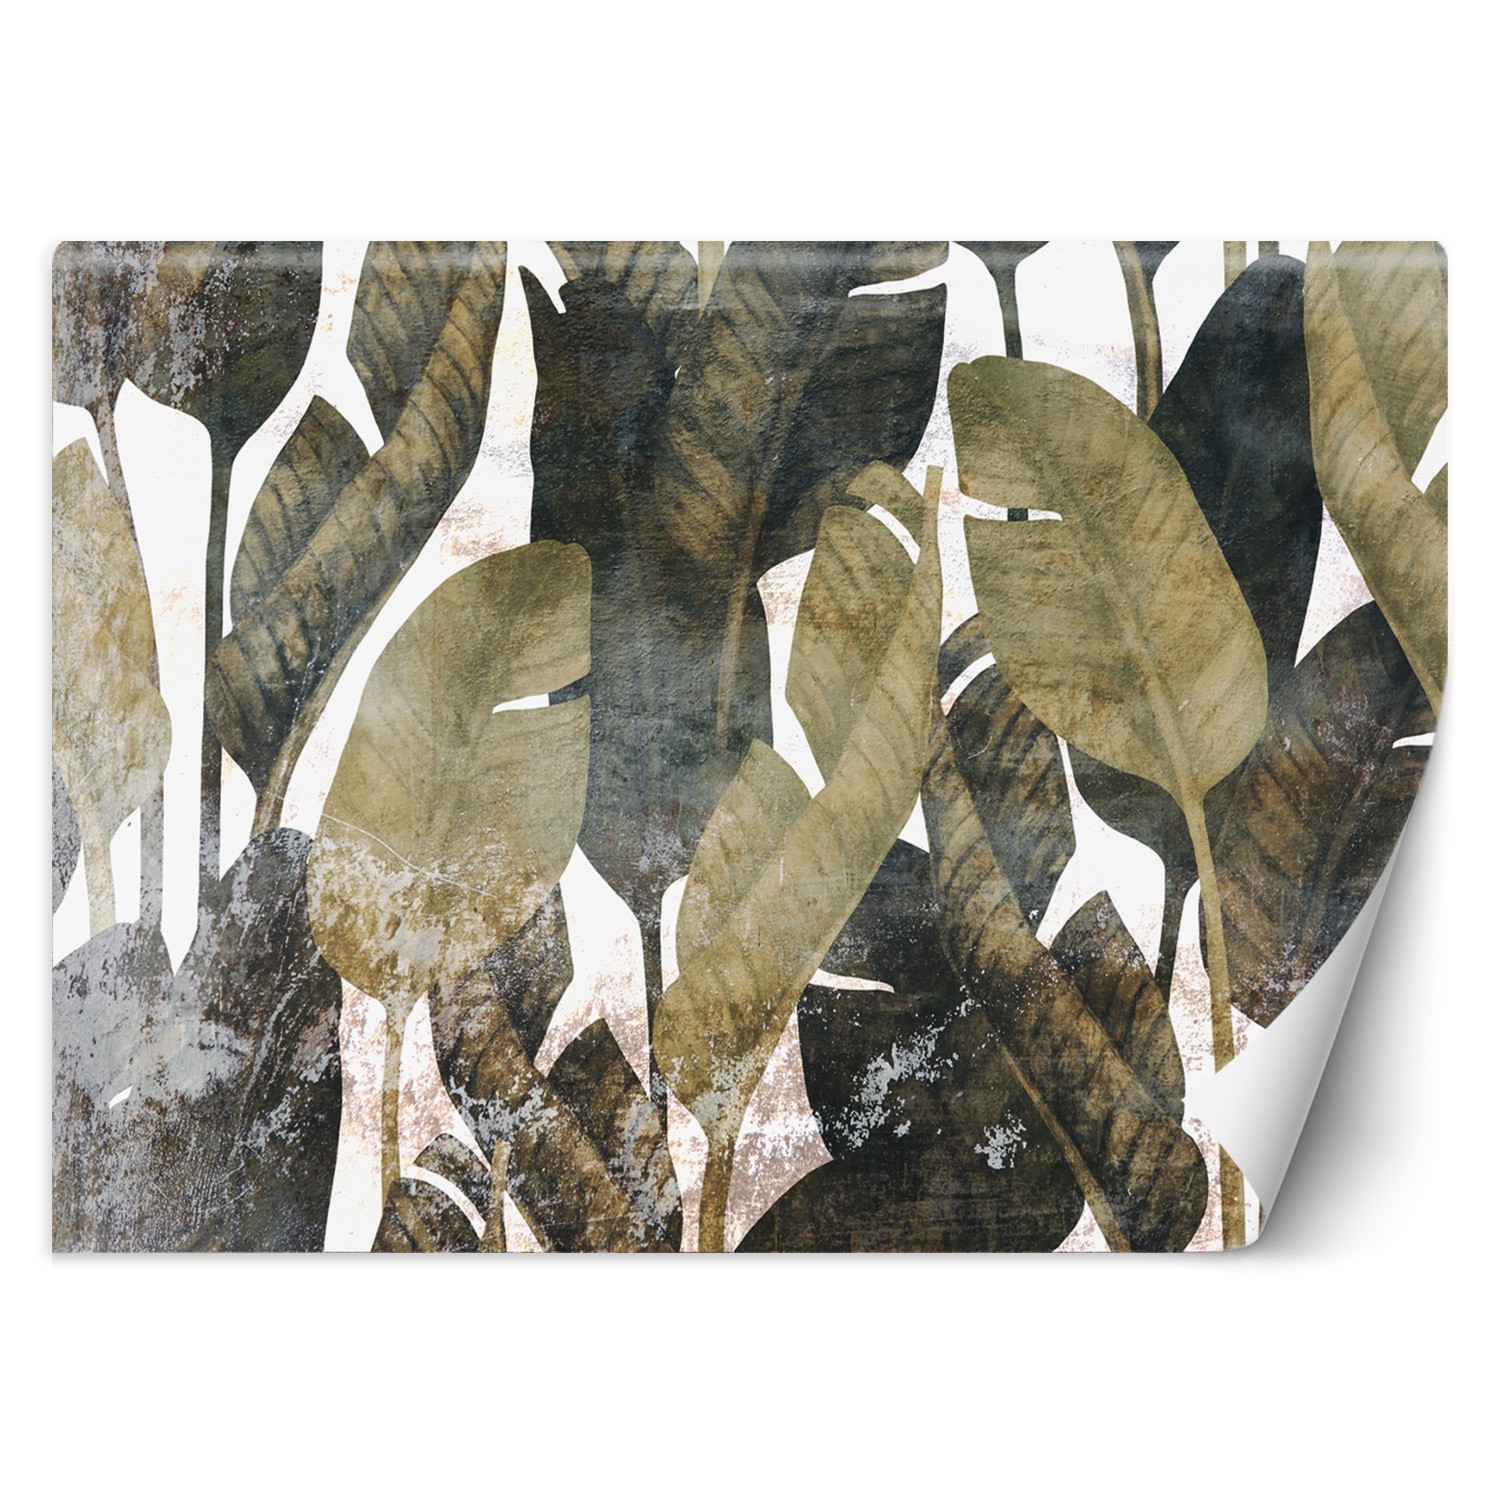 Trend24 – Behang – Bananenblaadjes – Vliesbehang – Fotobehang 3D – Behang Woonkamer – 450x315x2 cm – Incl. behanglijm